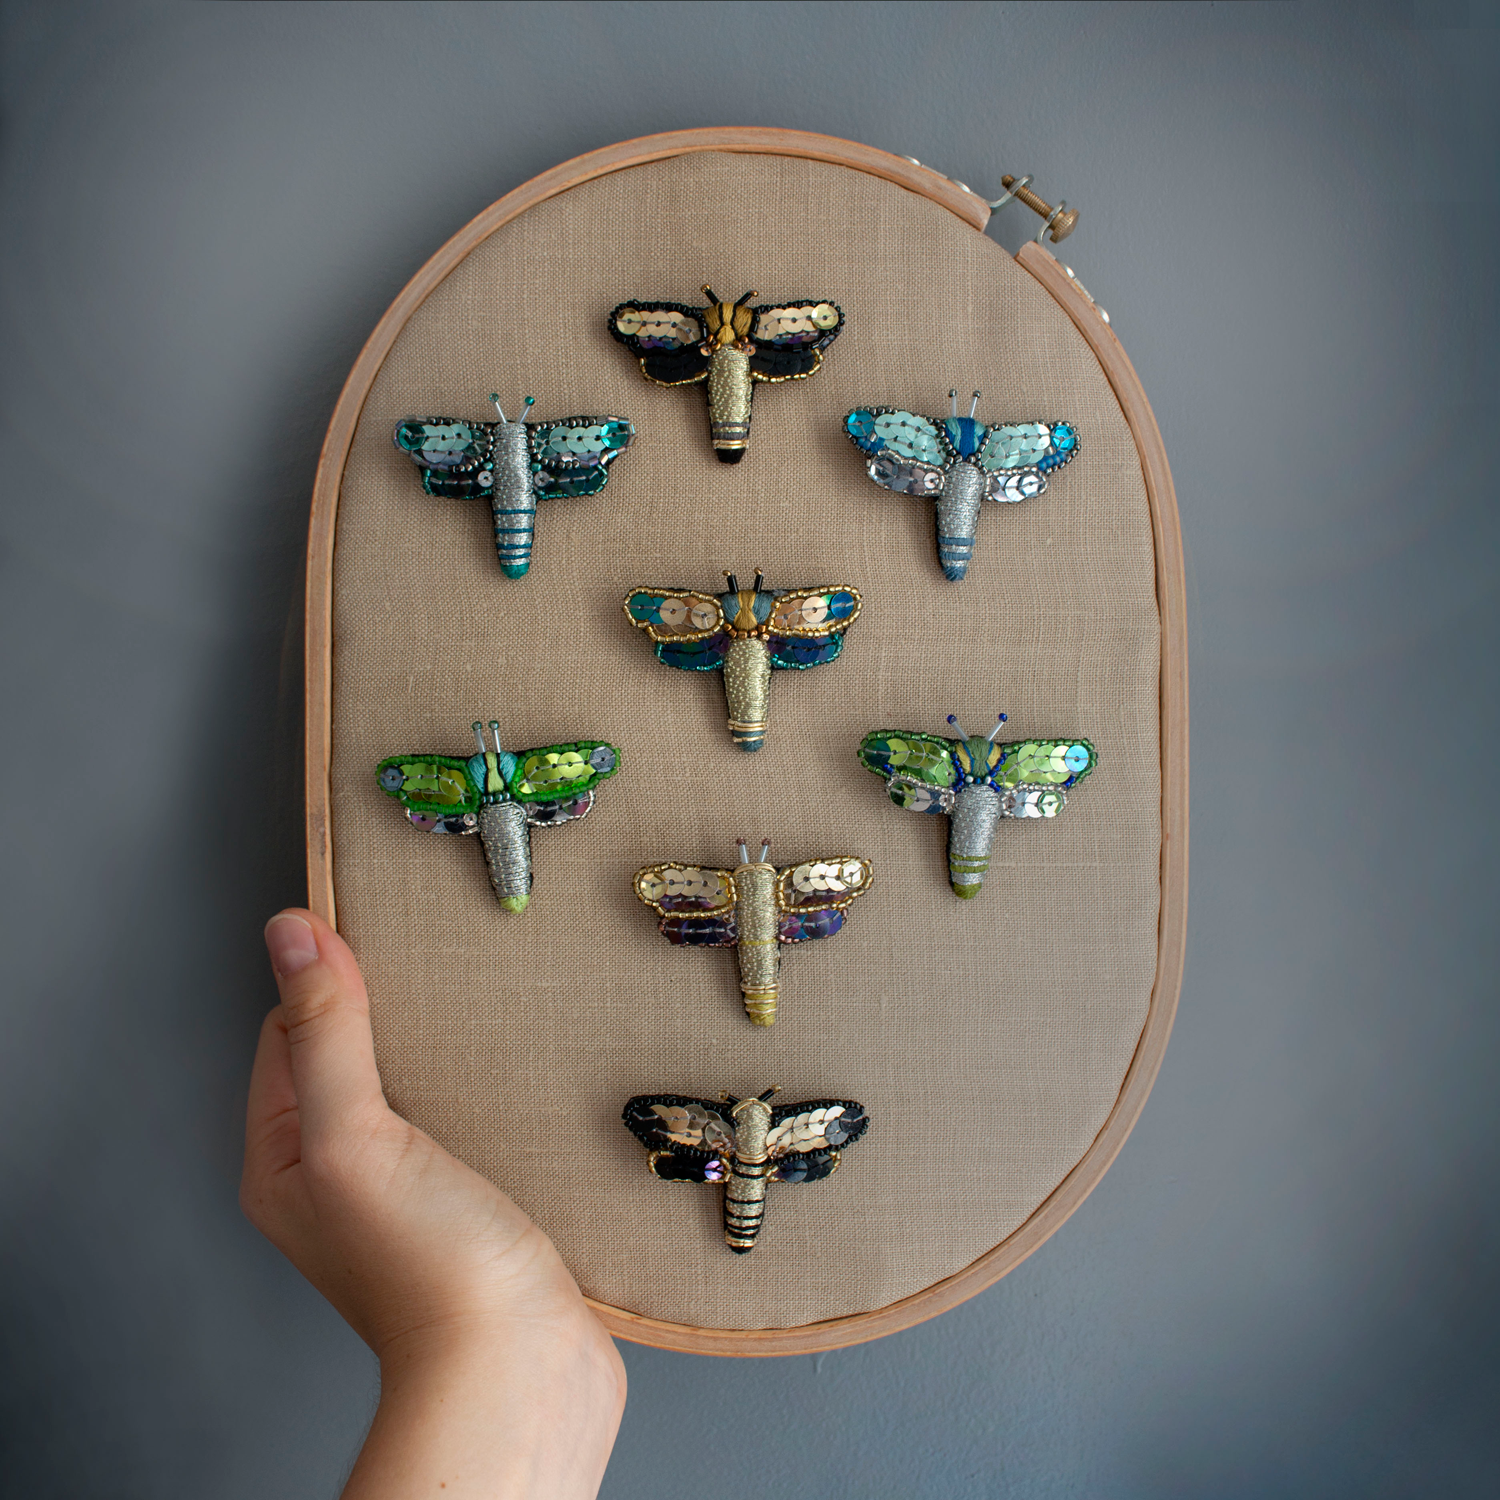 Kompozycja z broszkami Solar Dragonfly, projekt i wykonanie: Aleksandra Surmak.